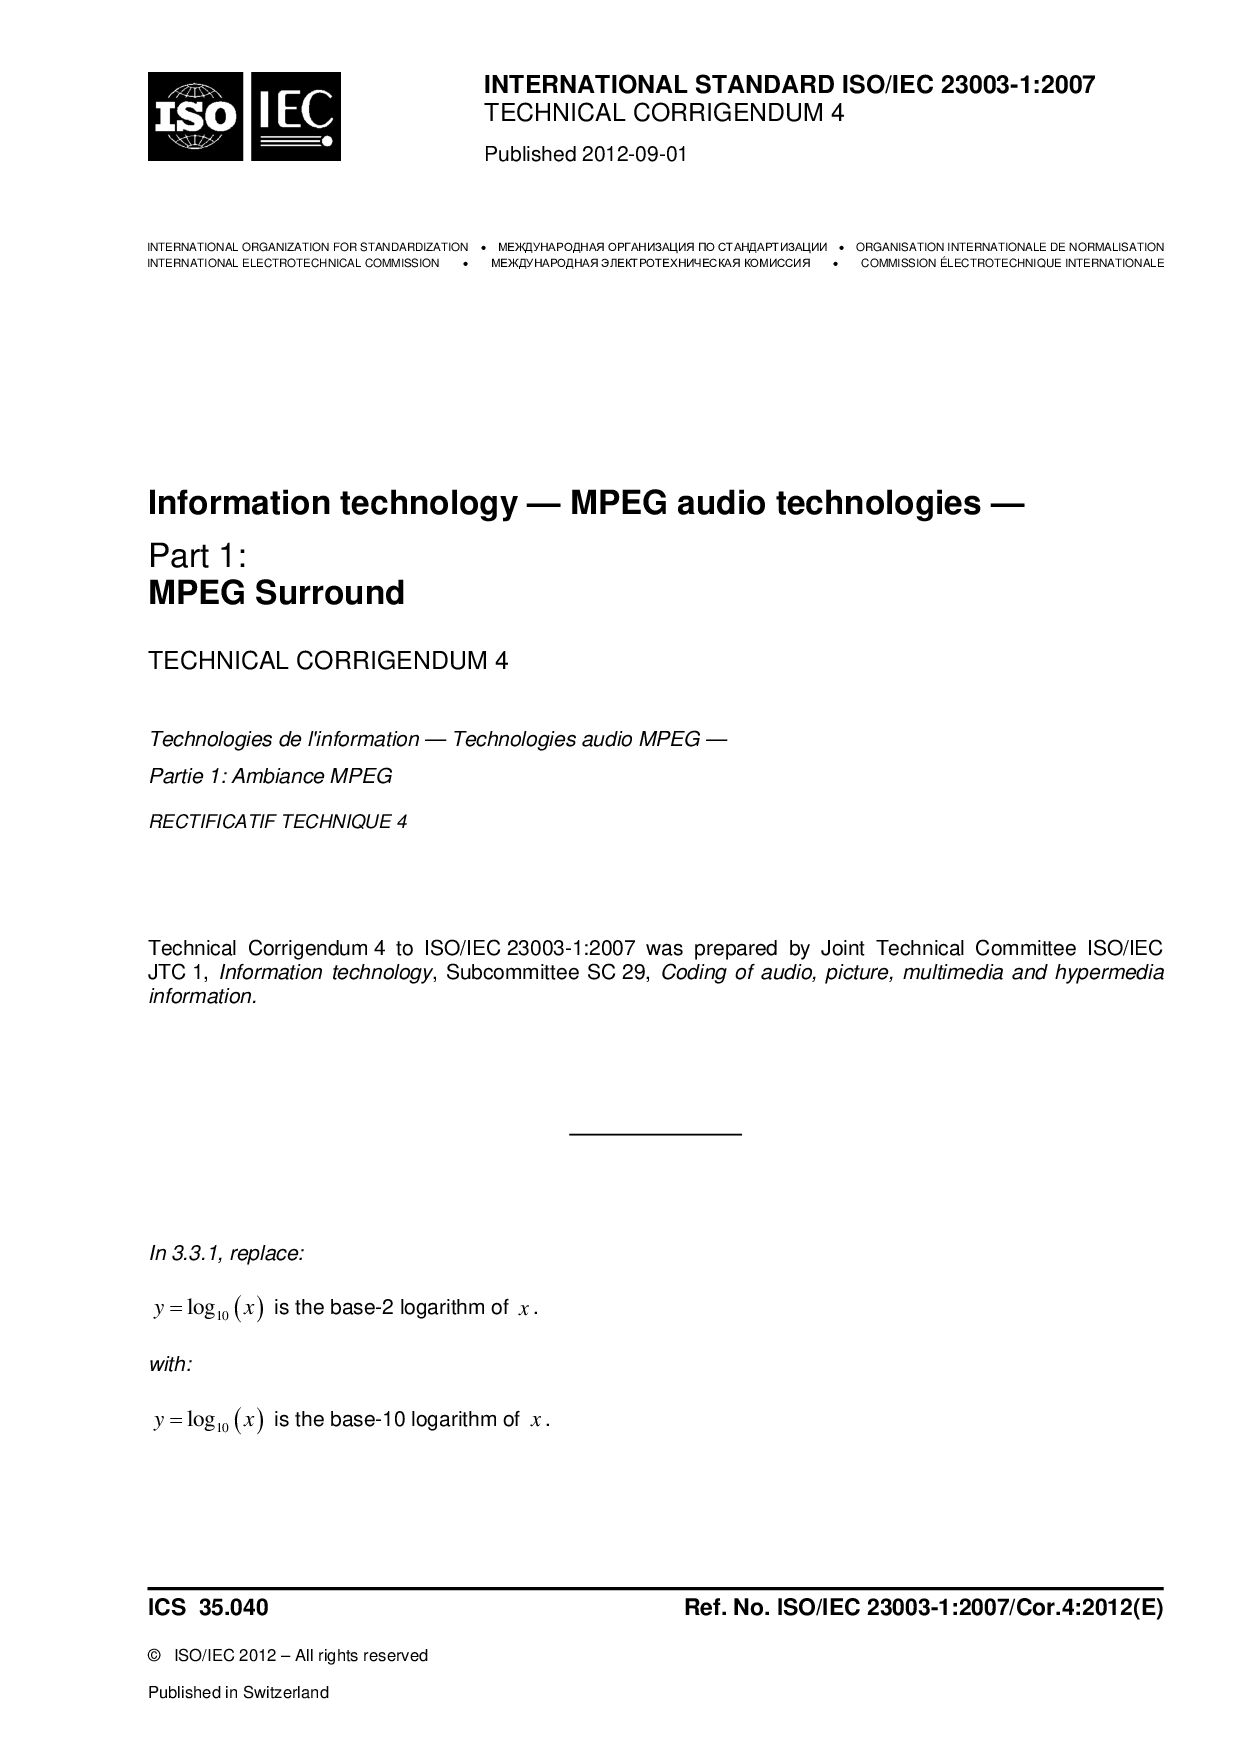 ISO/IEC 23003-1:2007/Cor 4:2012封面图